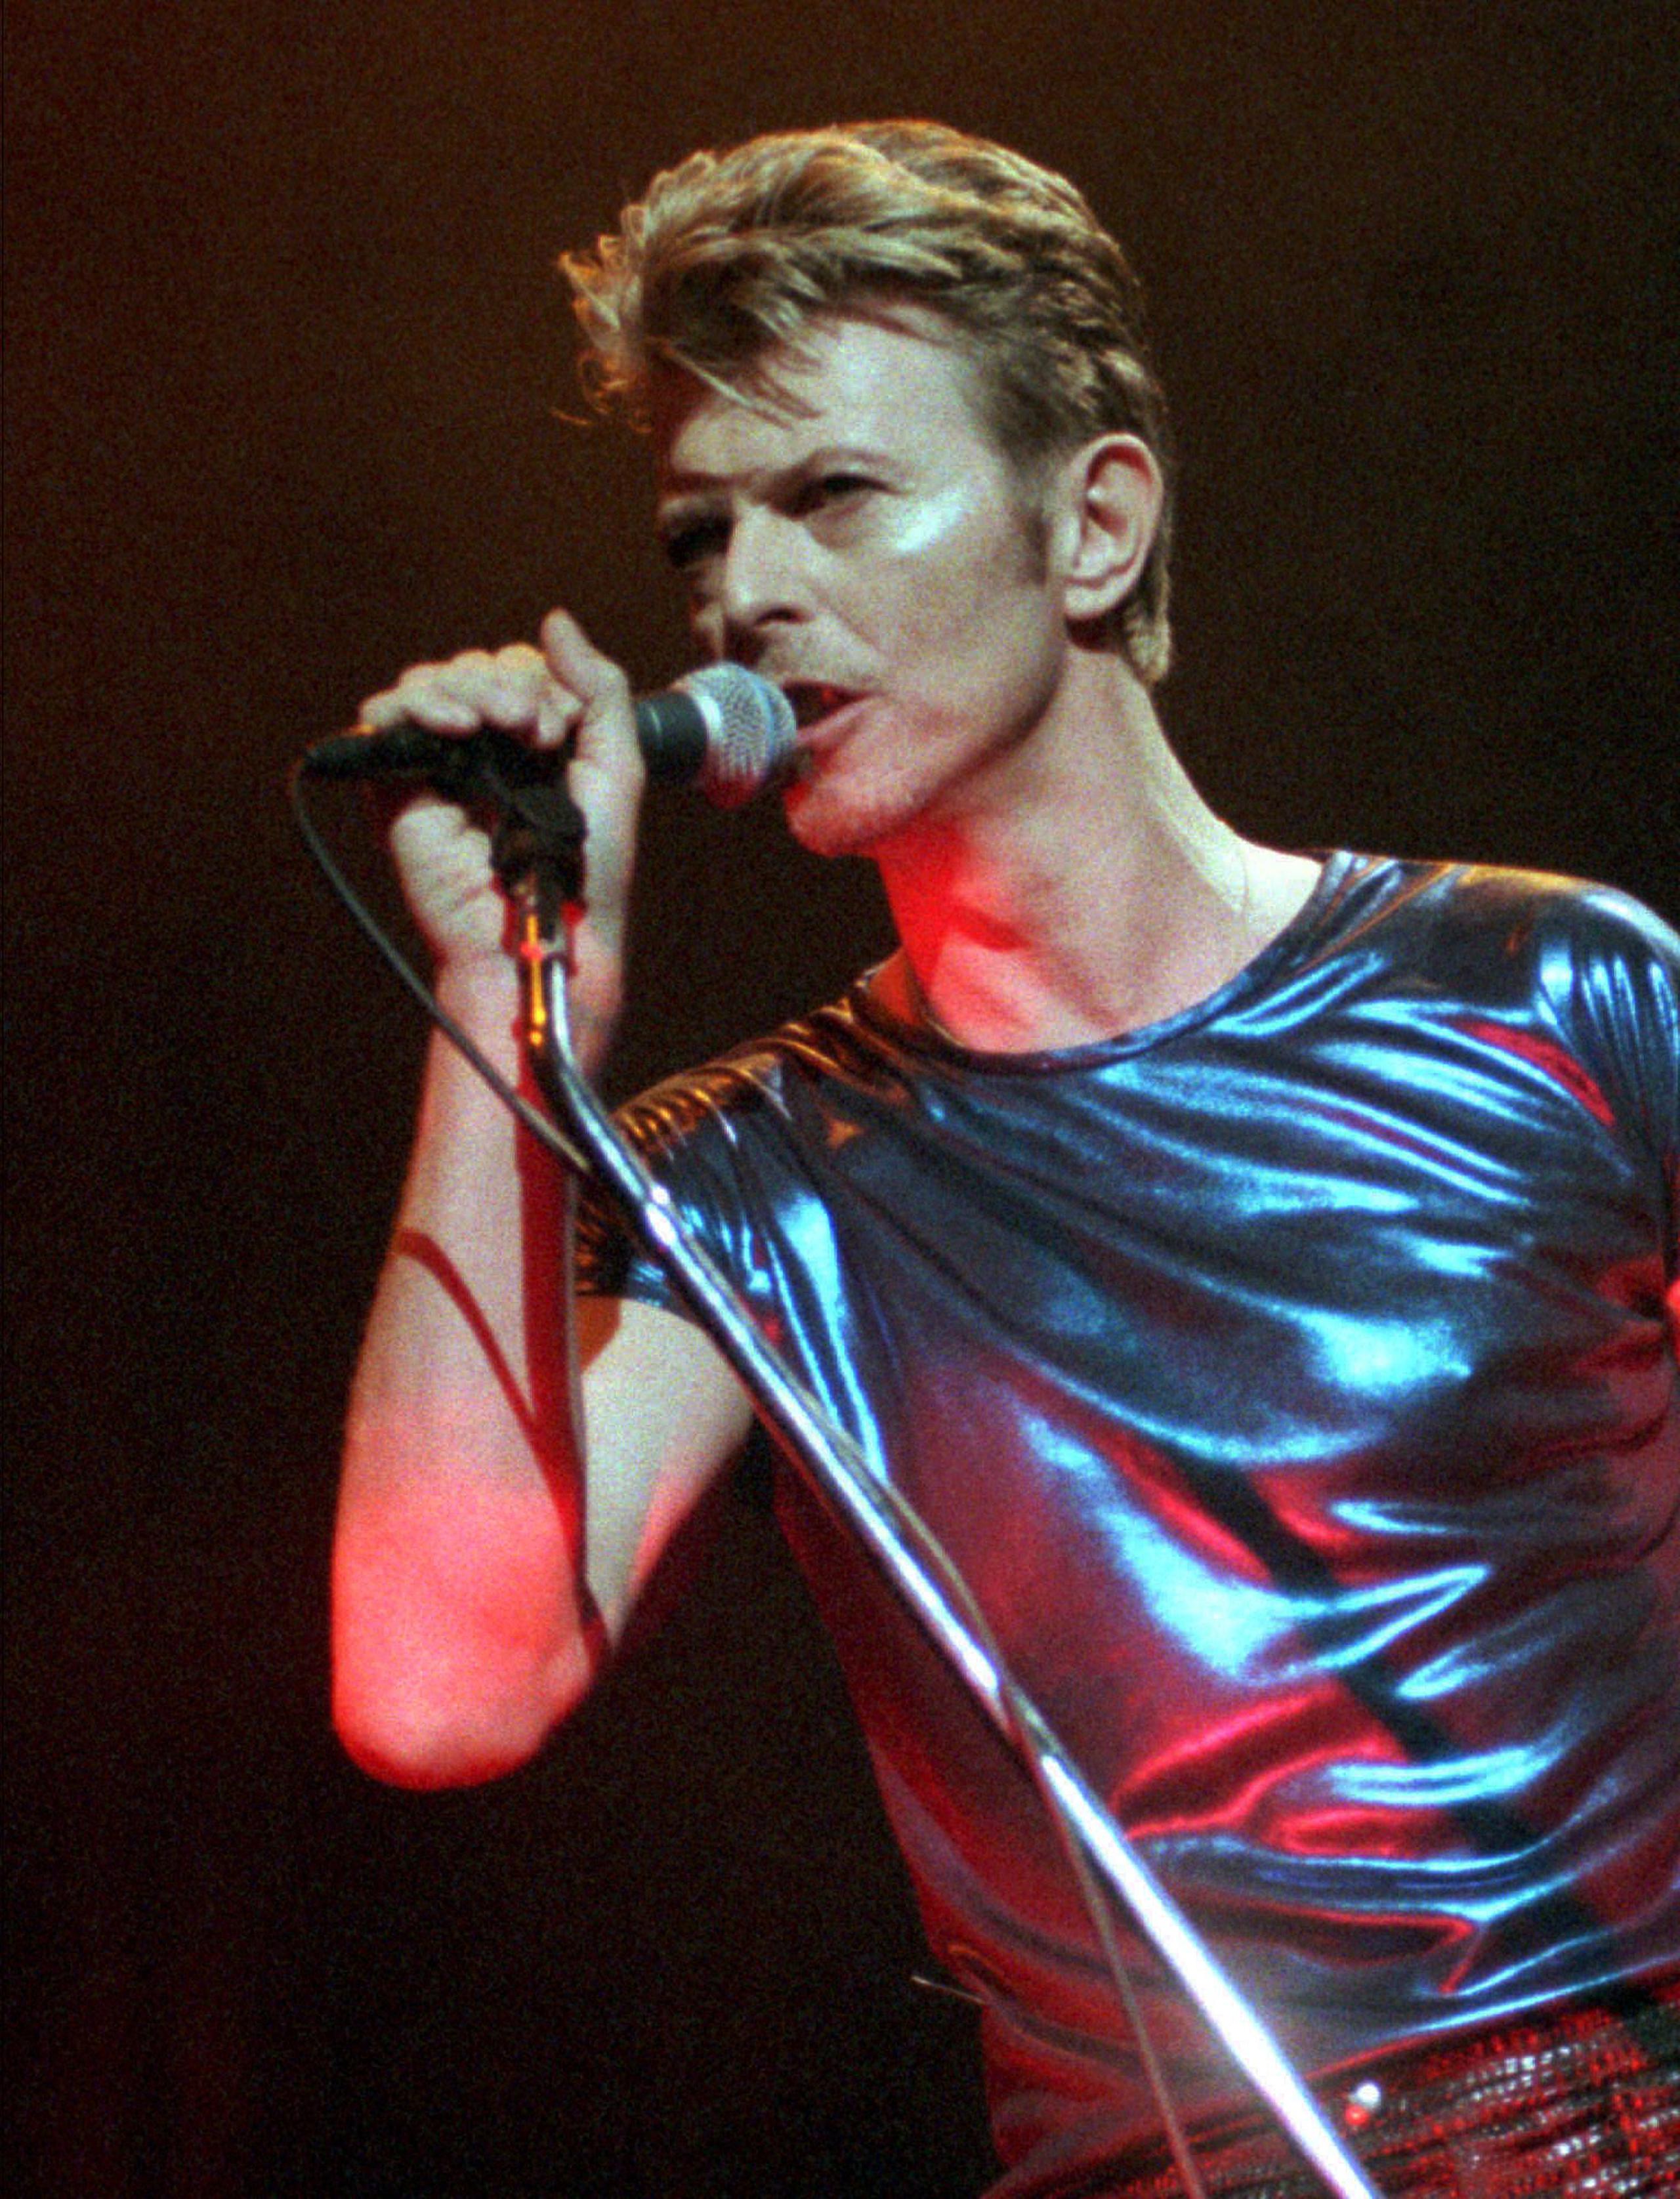 Canciones como "Space Oddity," "Ziggy Stardust" y "Let's Dance" están incluídas en el catálogo musical que compró la disquera.